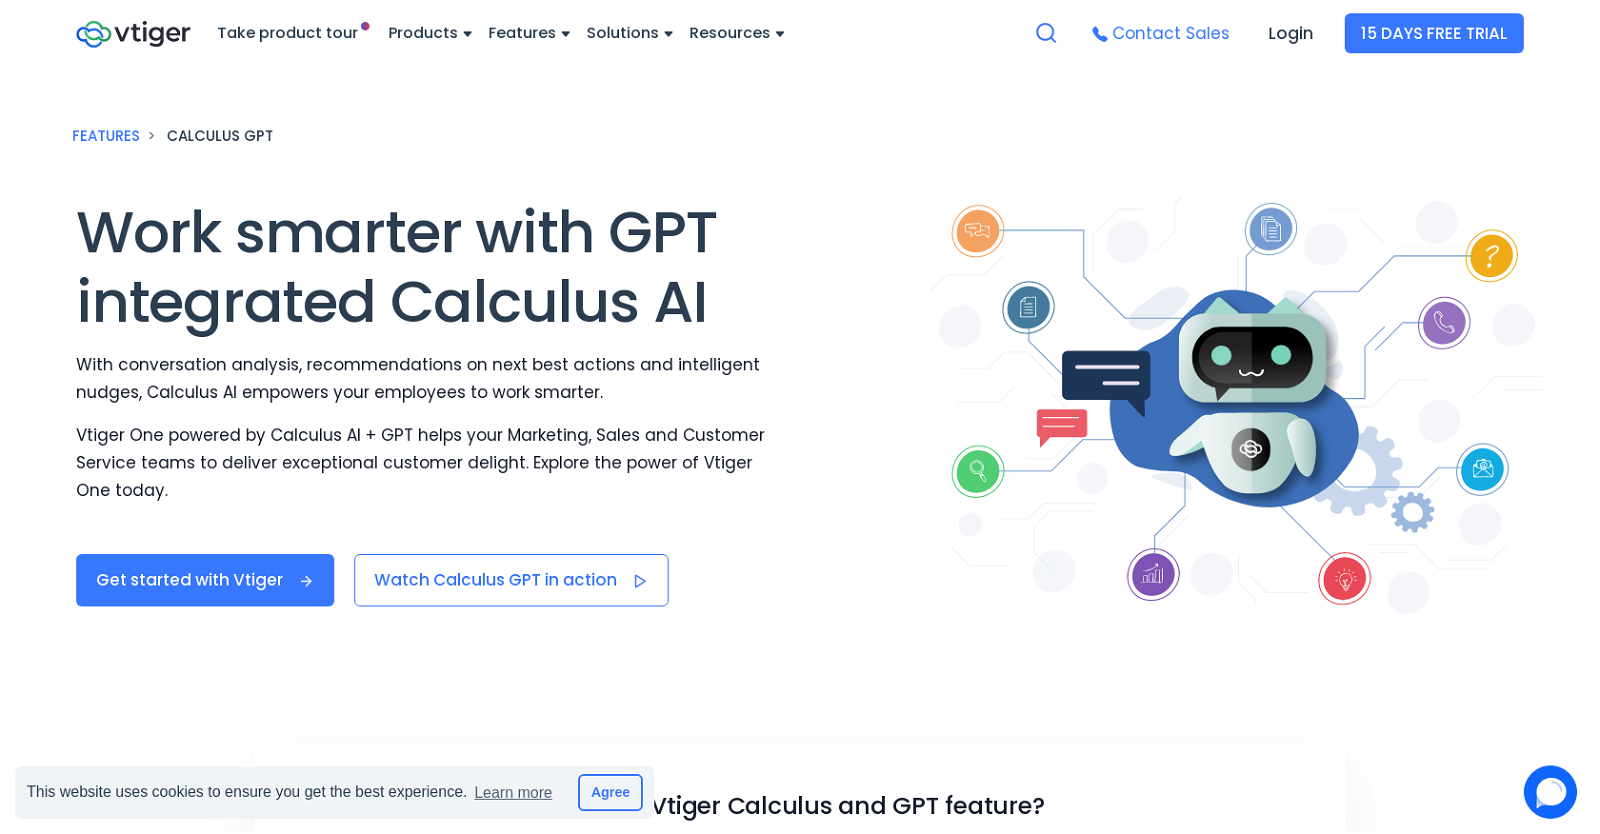 Vtiger Calculus GPT website